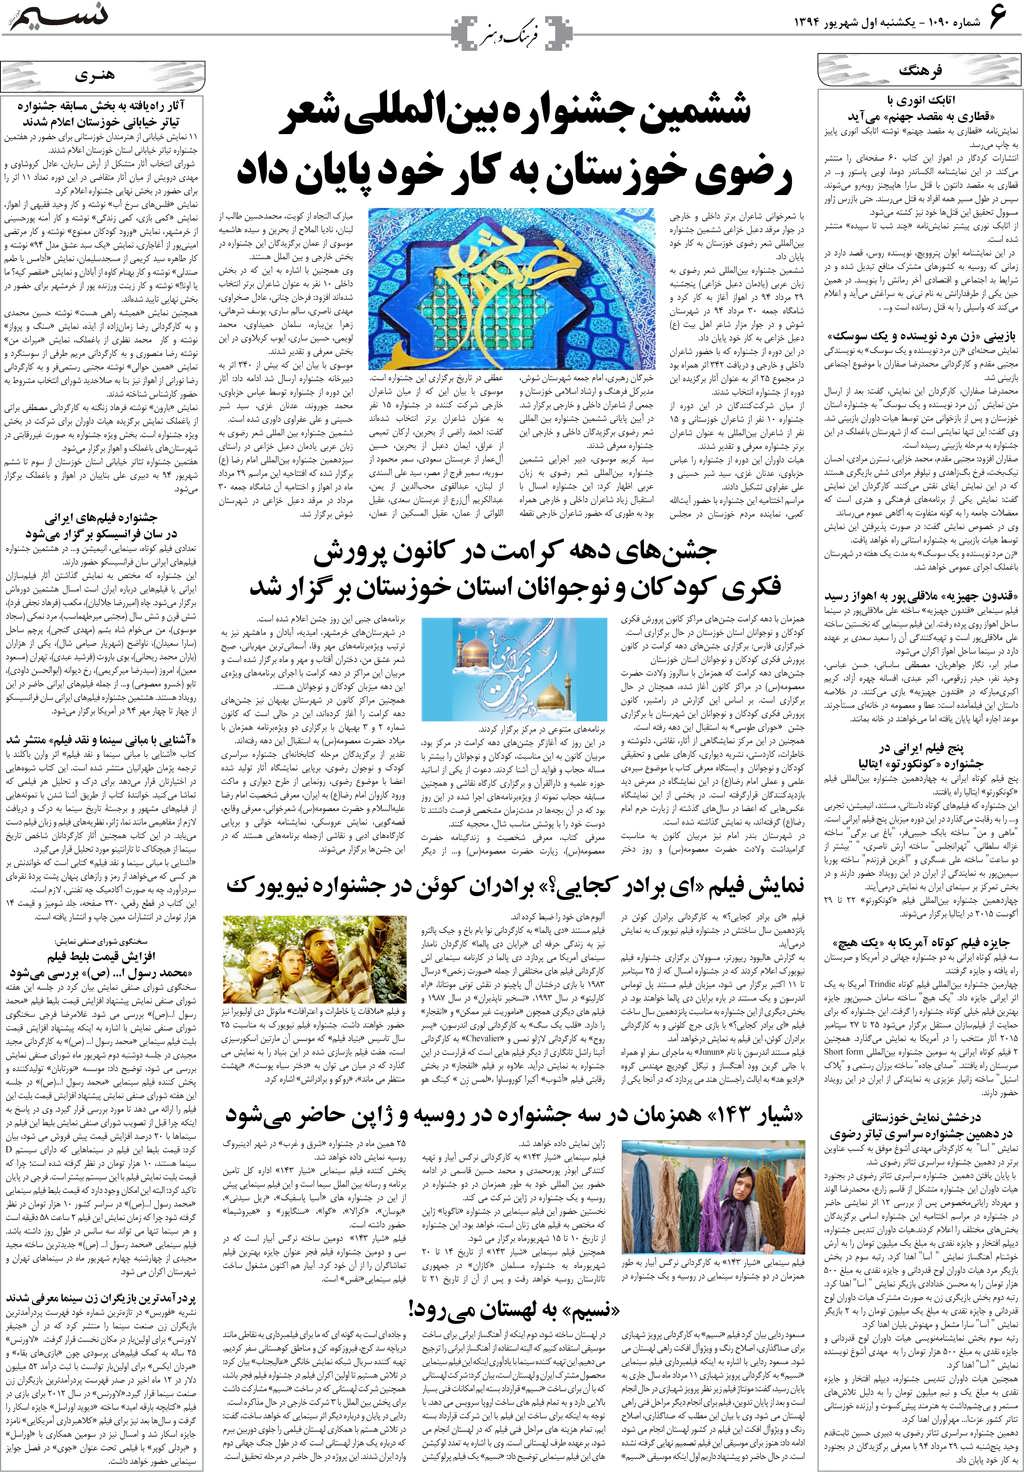 صفحه فرهنگ و هنر روزنامه نسیم شماره 1090